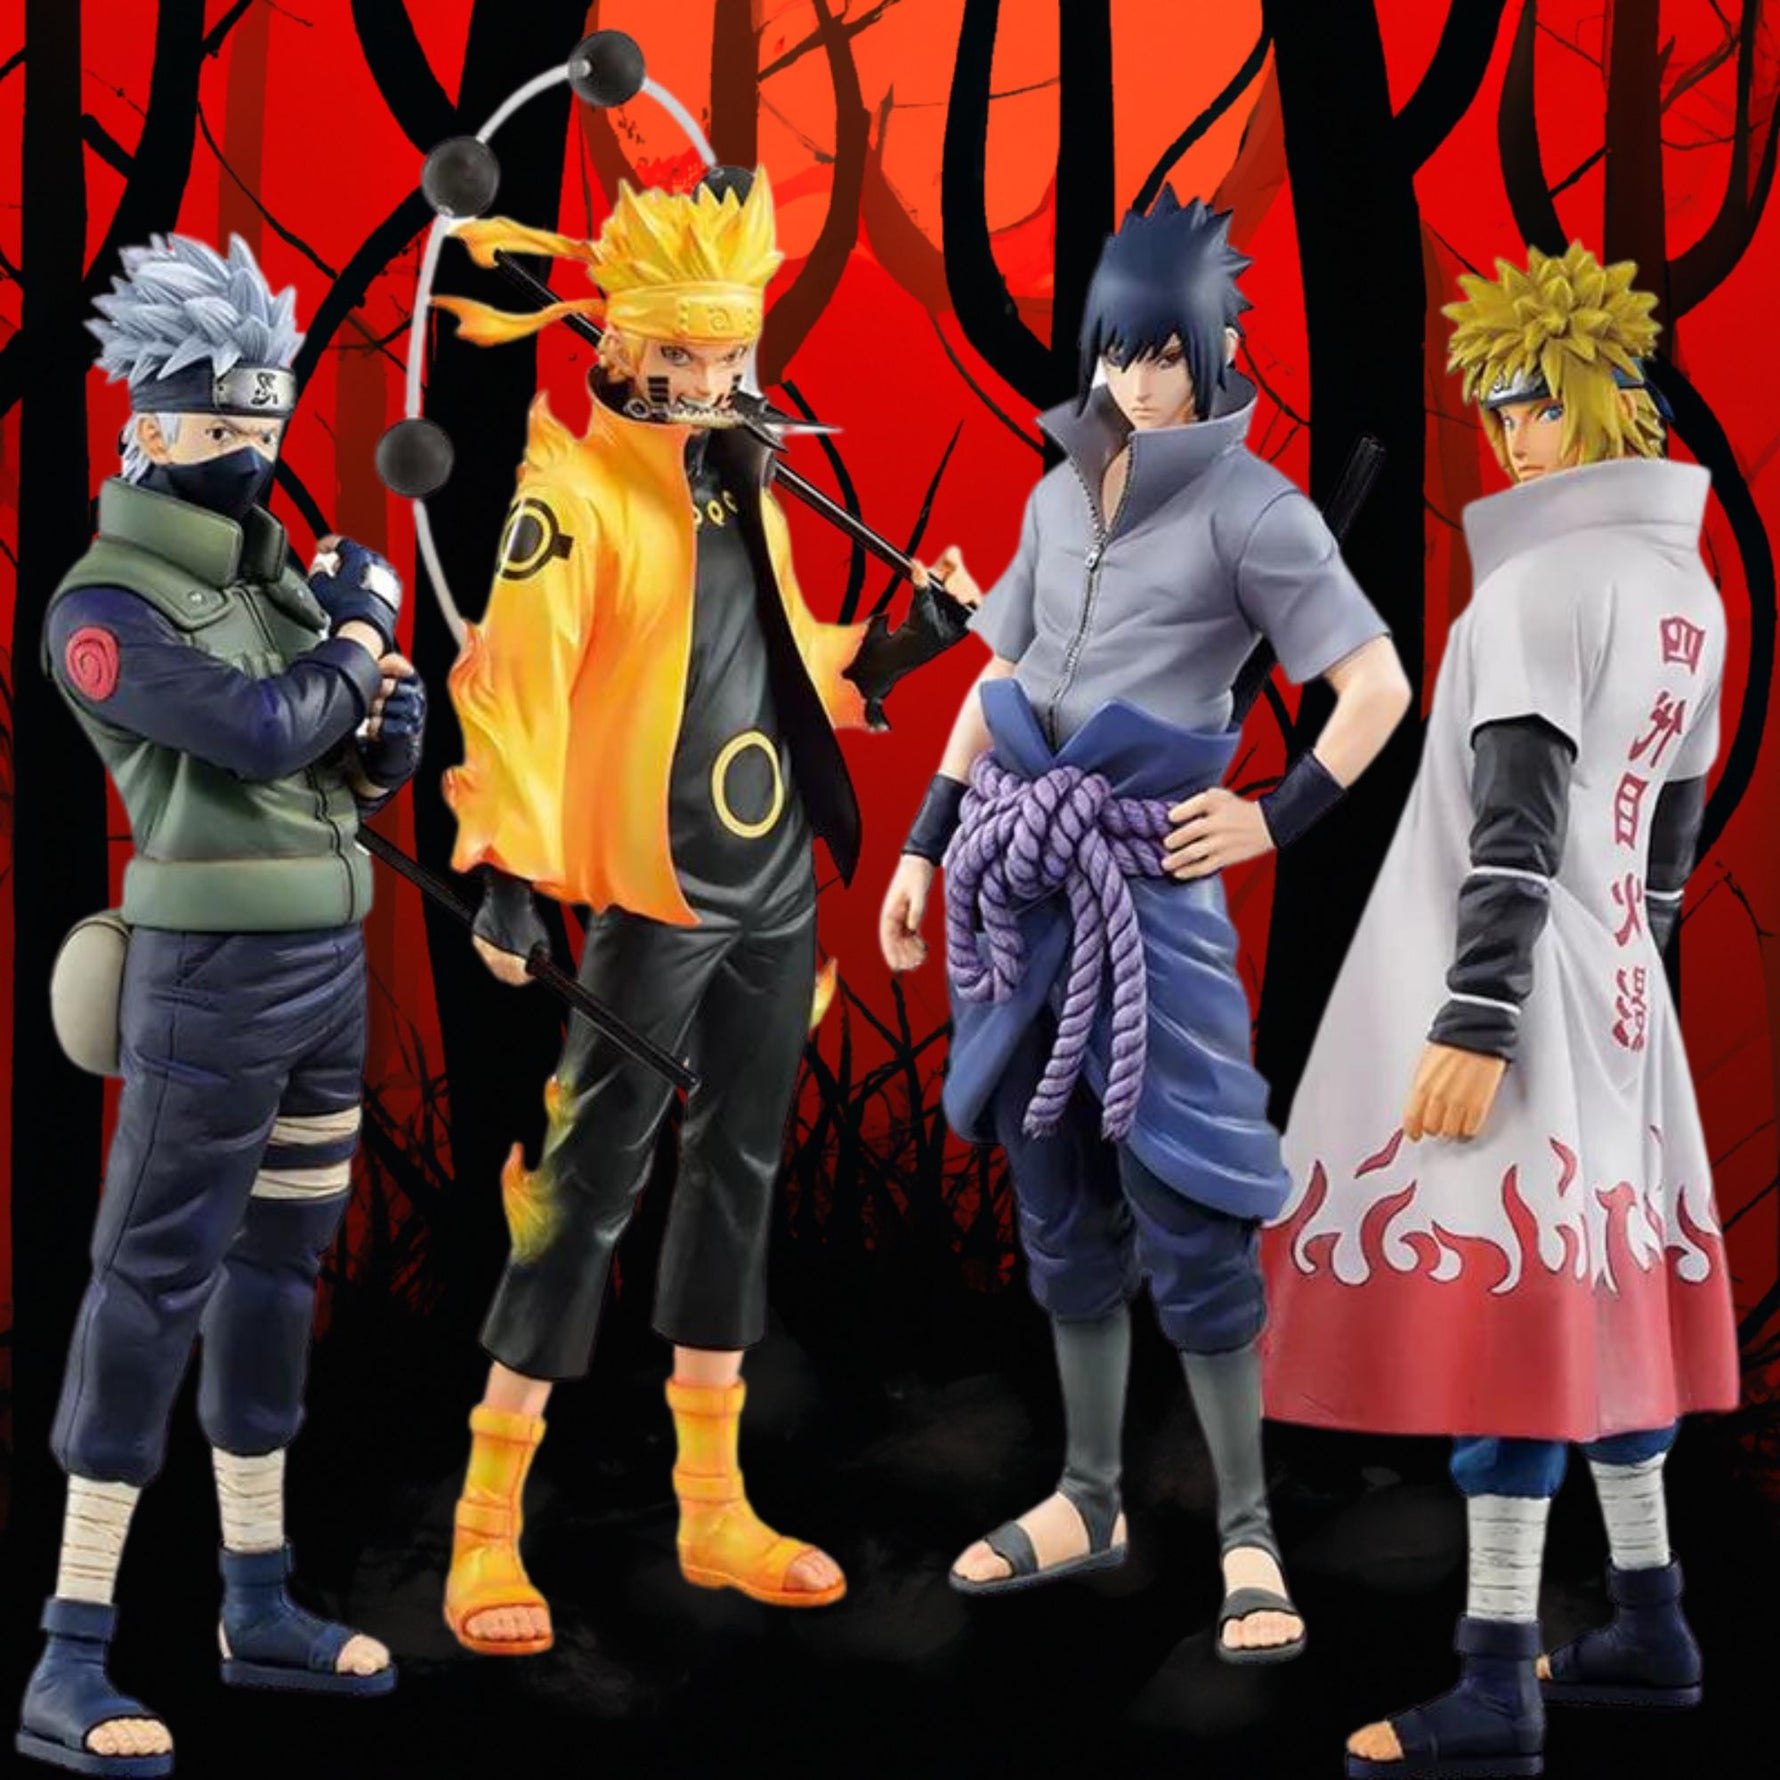 Figuras de Naruto - Anime (27cm) - nihonski